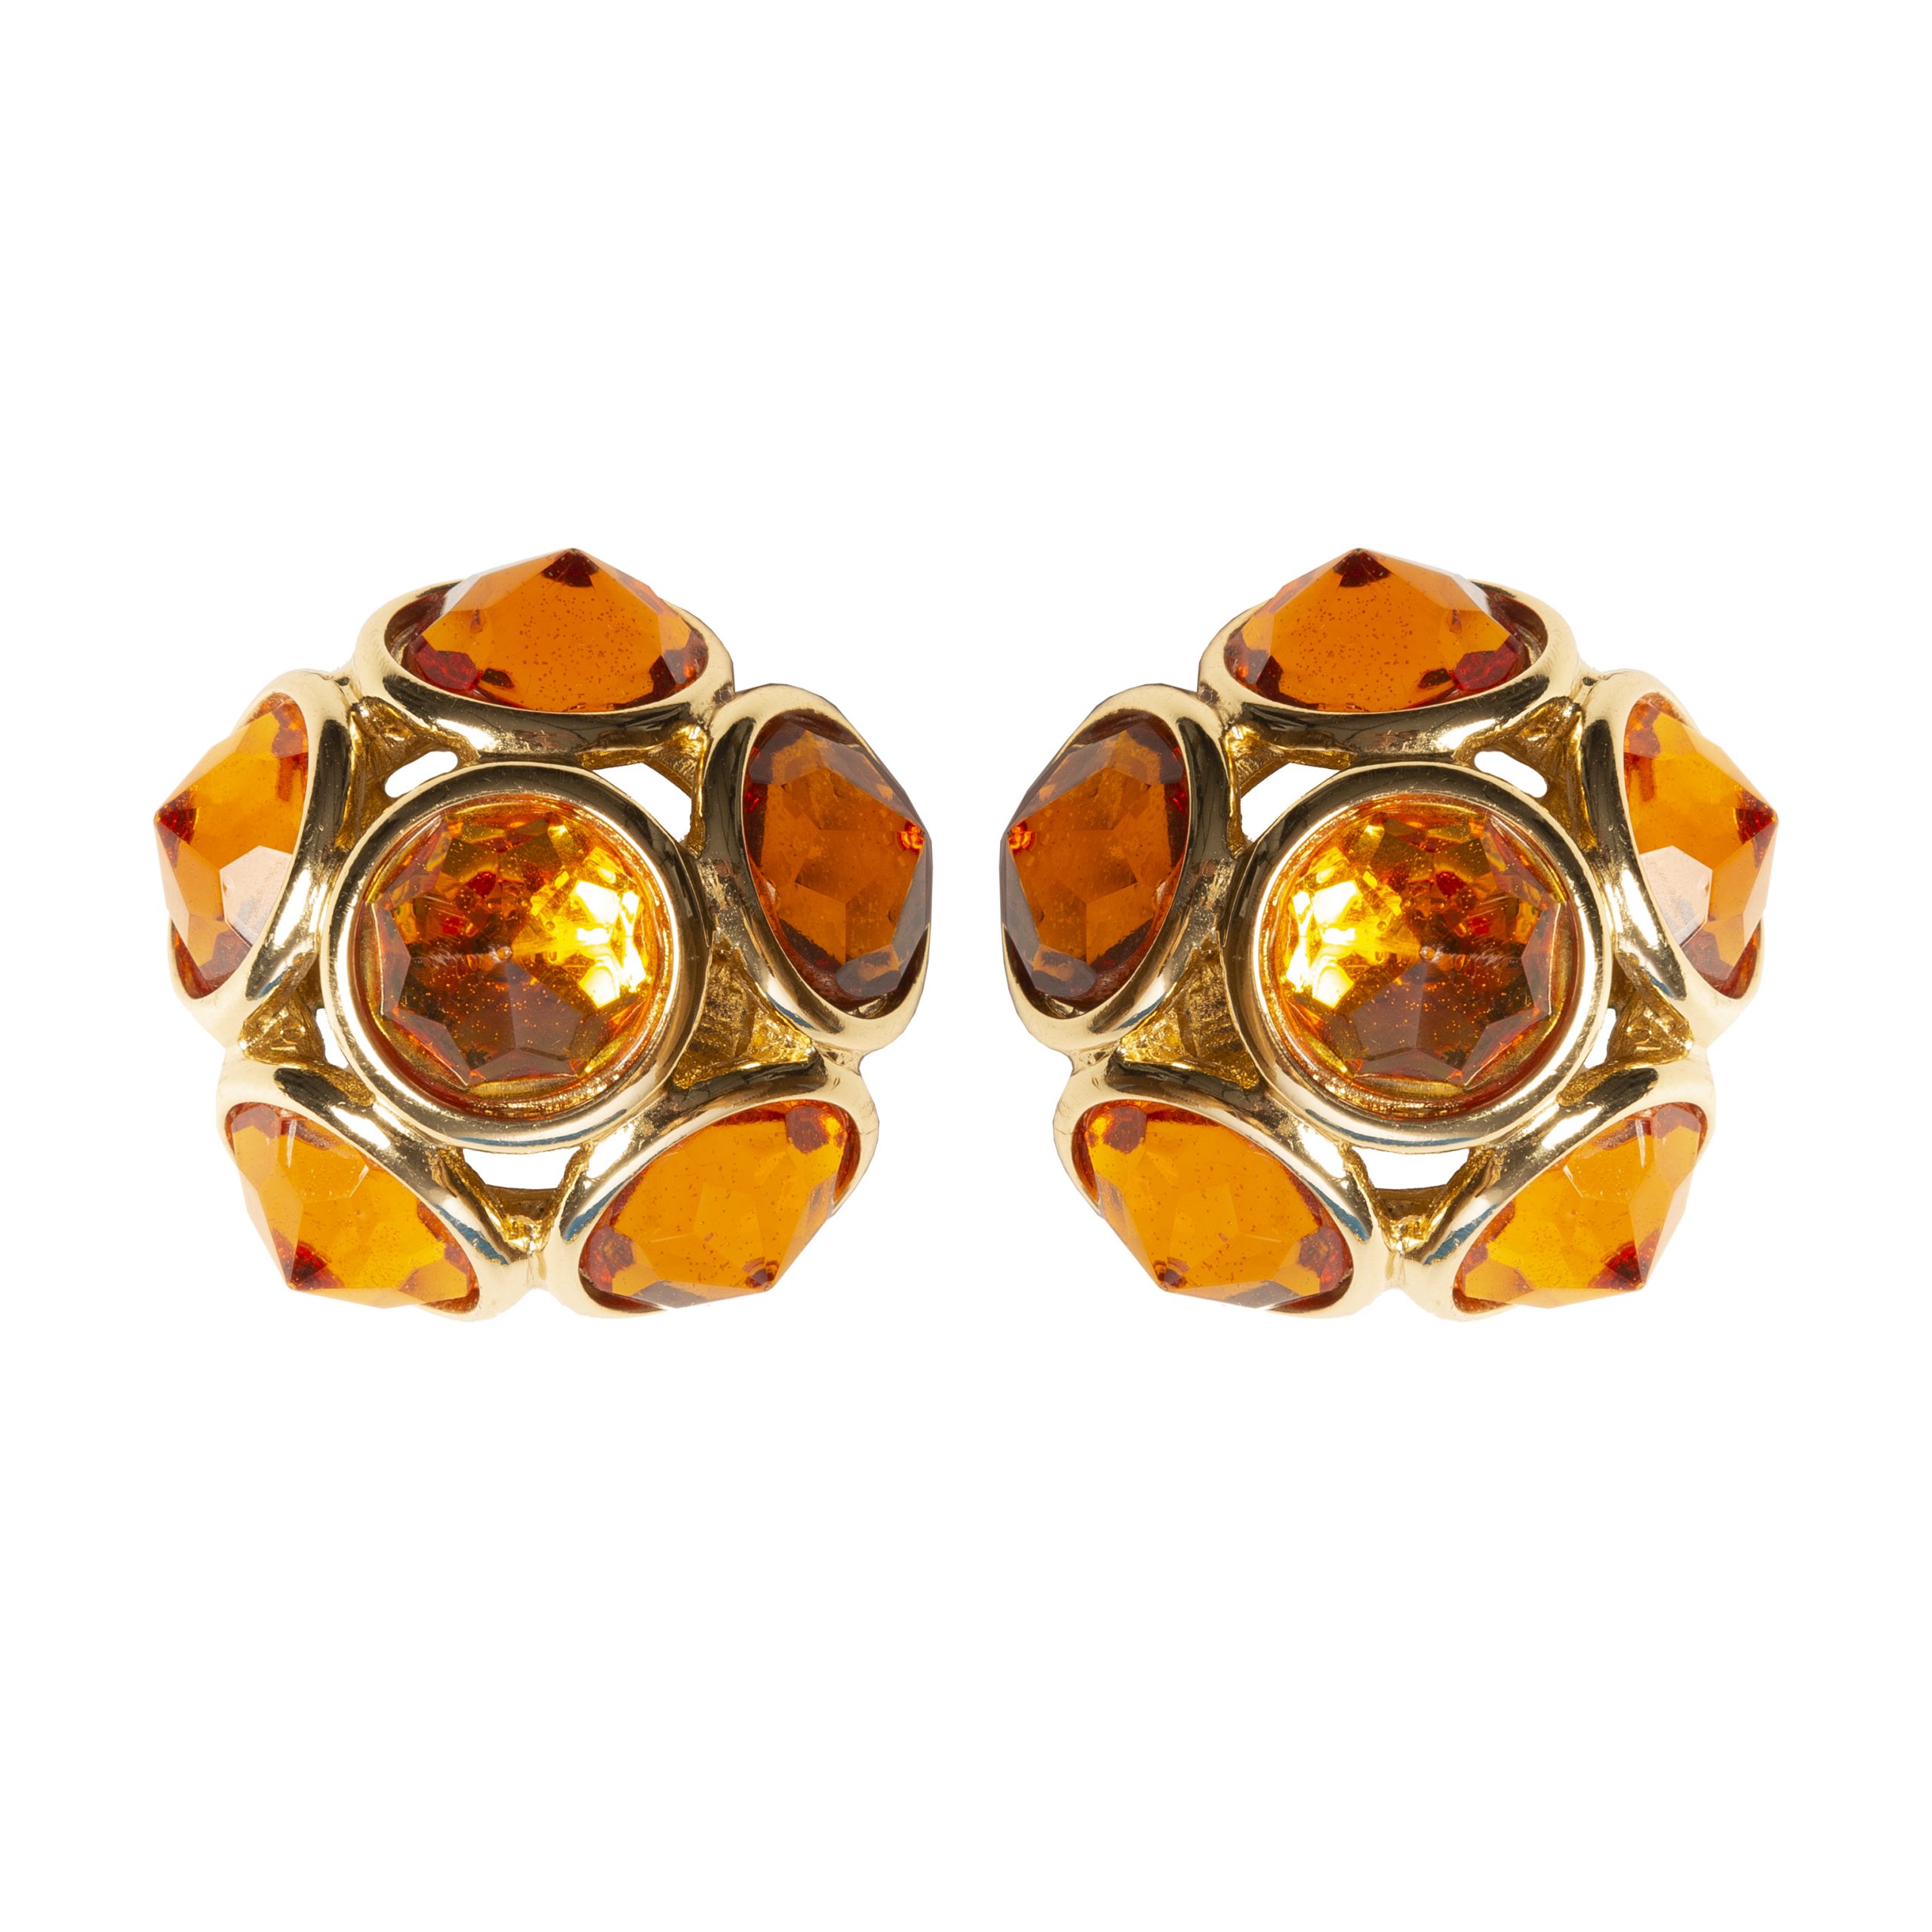 Vintage faced orange stones round earrings